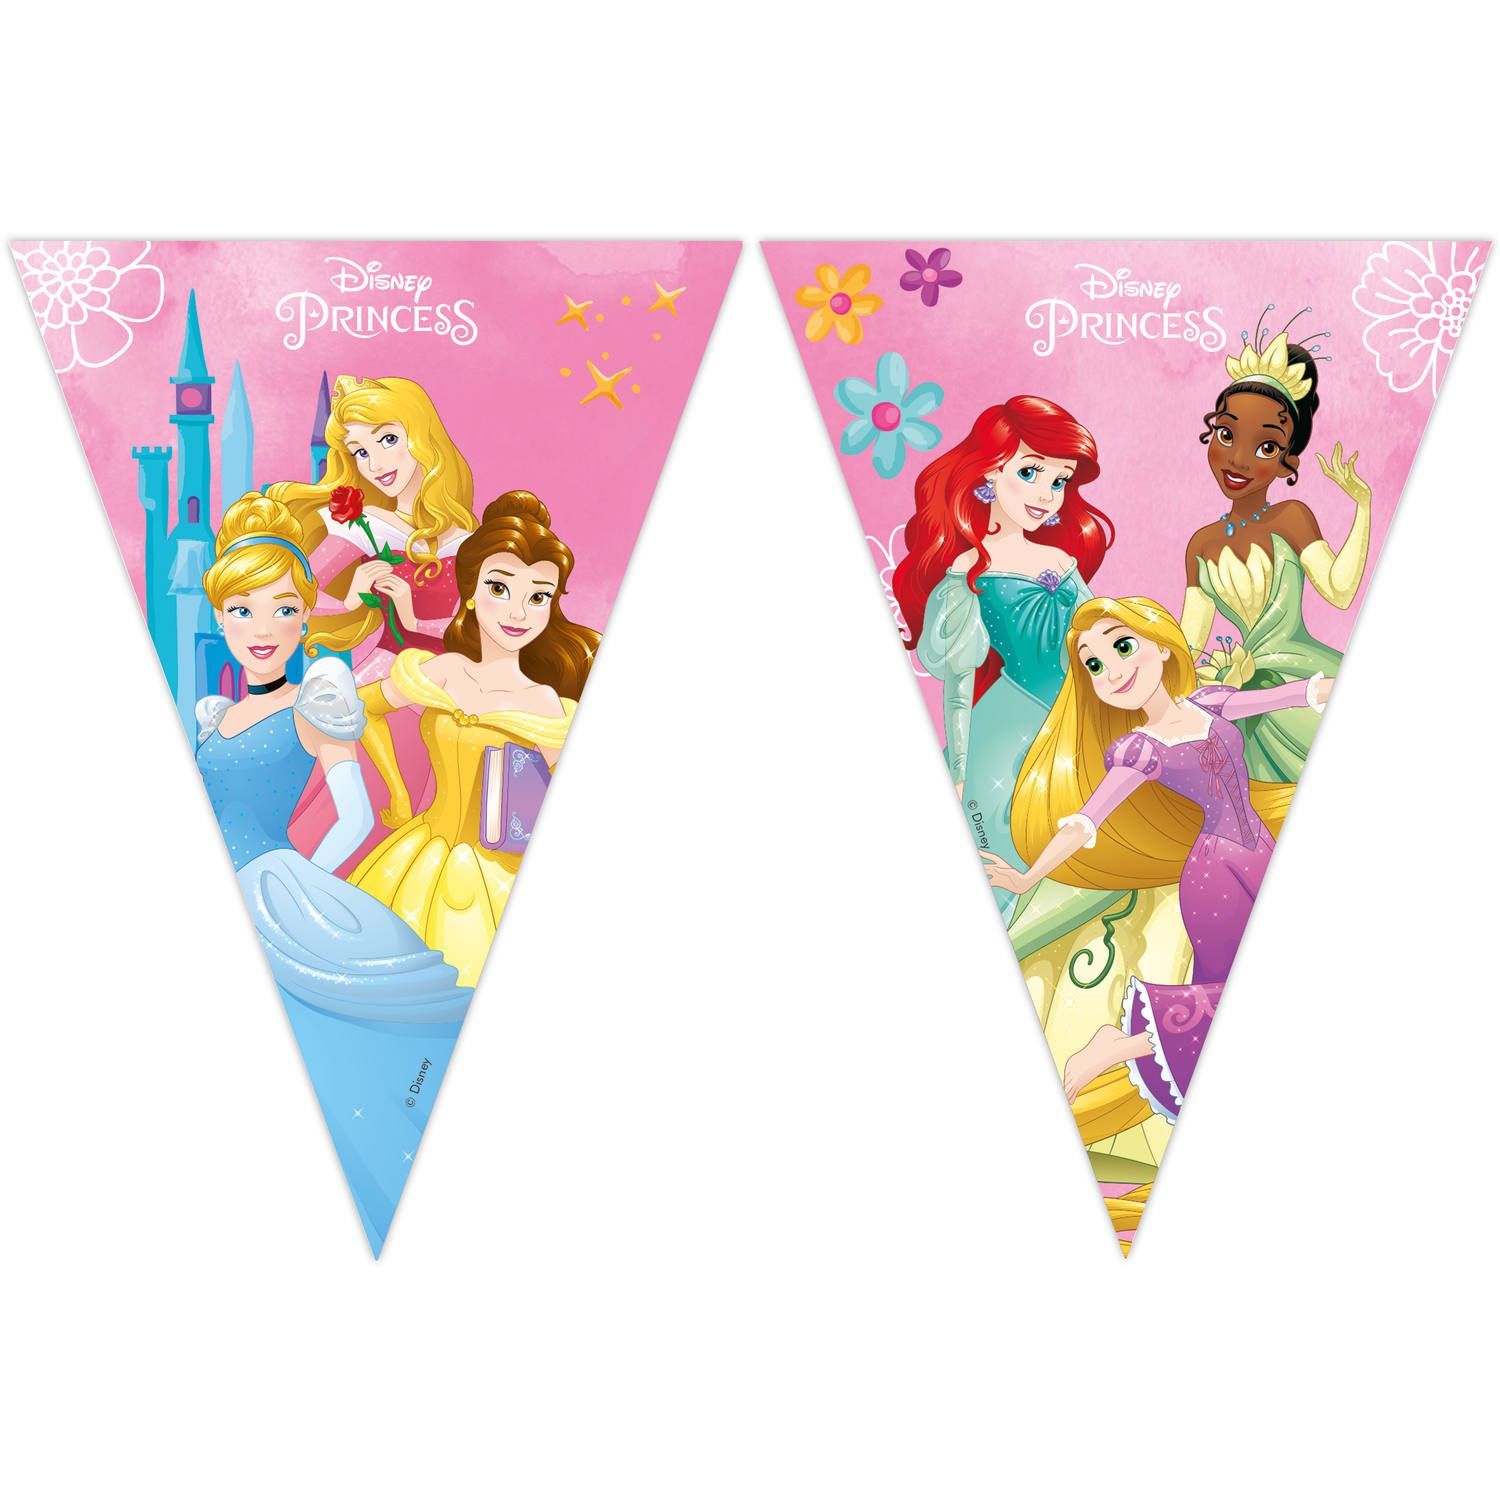 Disney prinsessen kinderfeestje vlaggenlijn